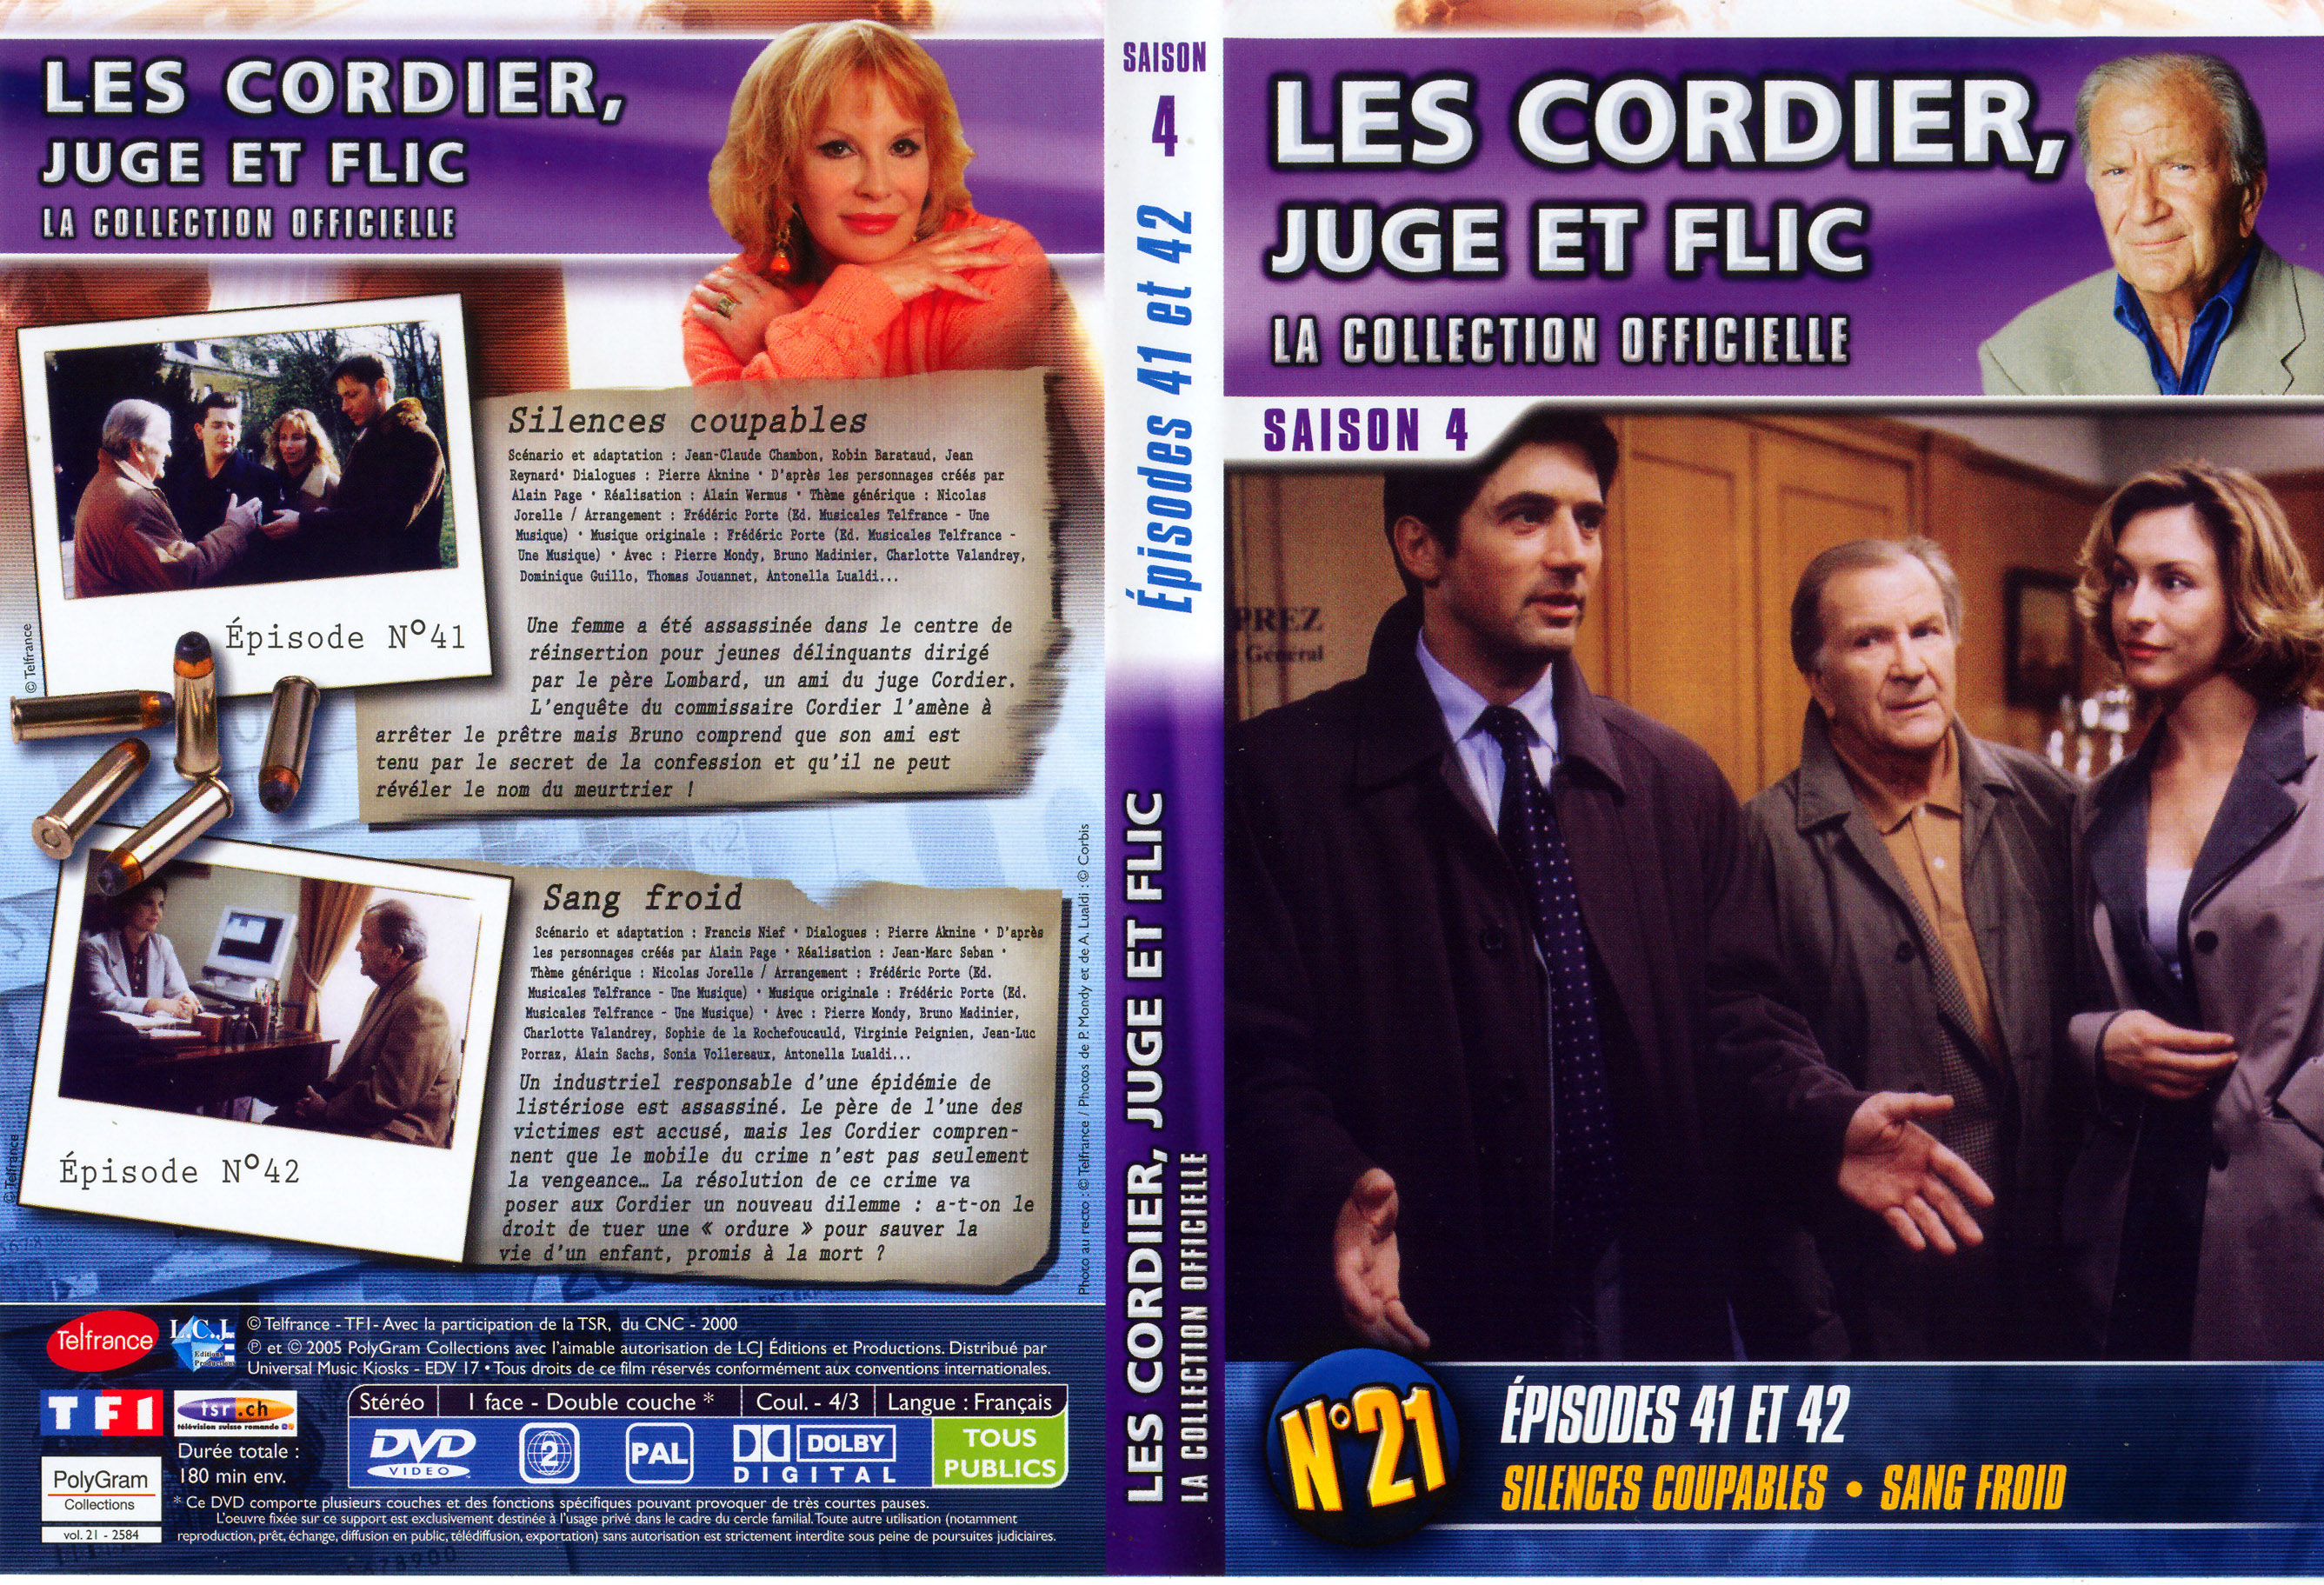 Jaquette DVD Les cordier juge et flic Saison 4 vol 21